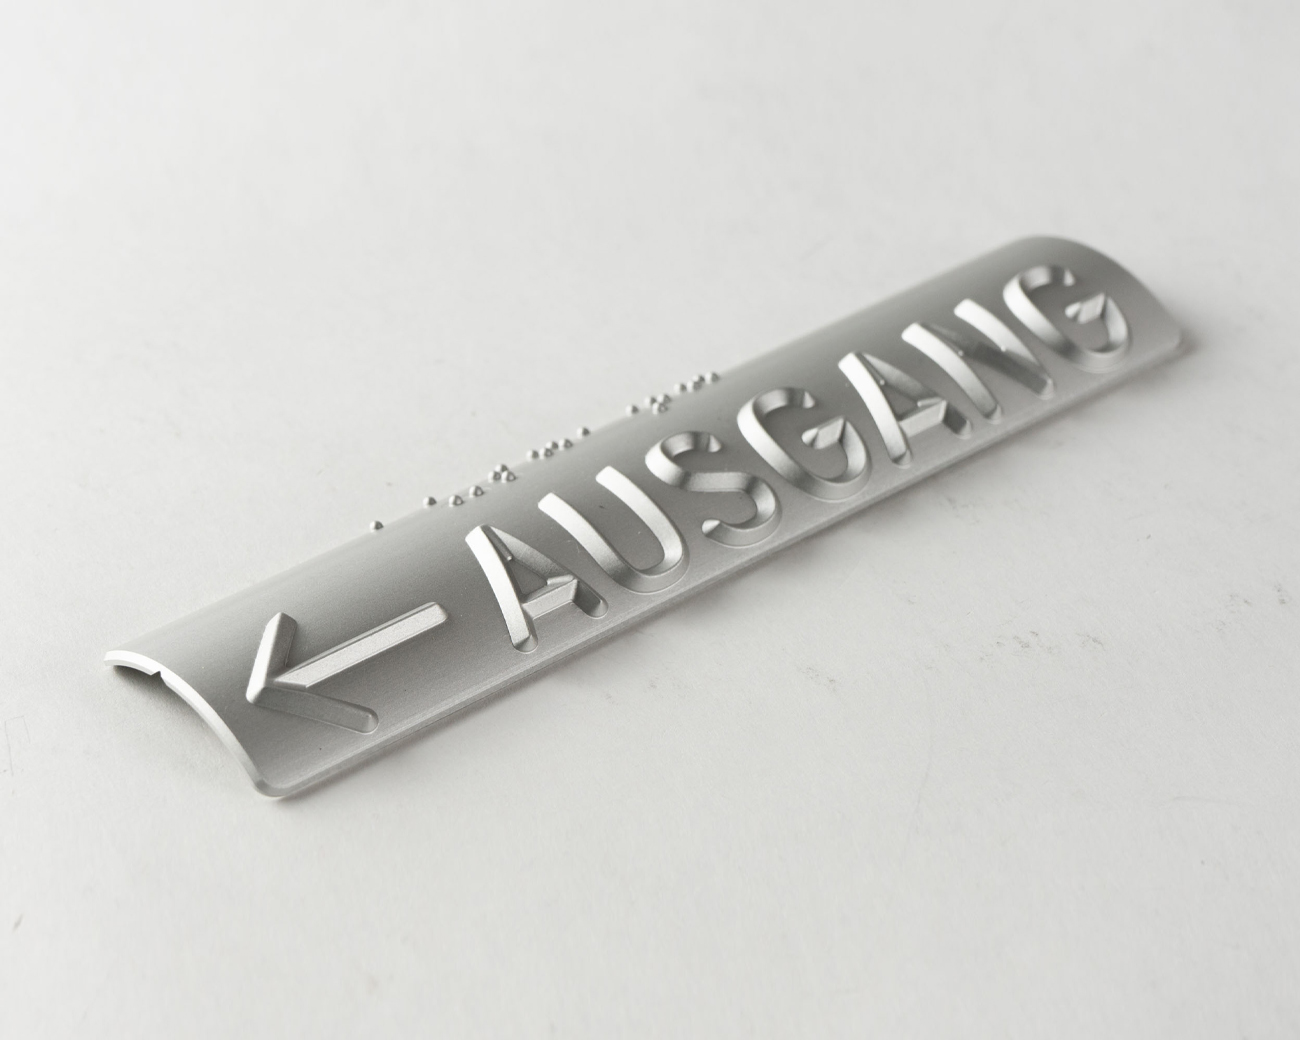 Handlaufschild rund Ø 40mm Aluminium silber eloxiert gefräst nach DIN32986 AUSGANG / NOTAUSGANG